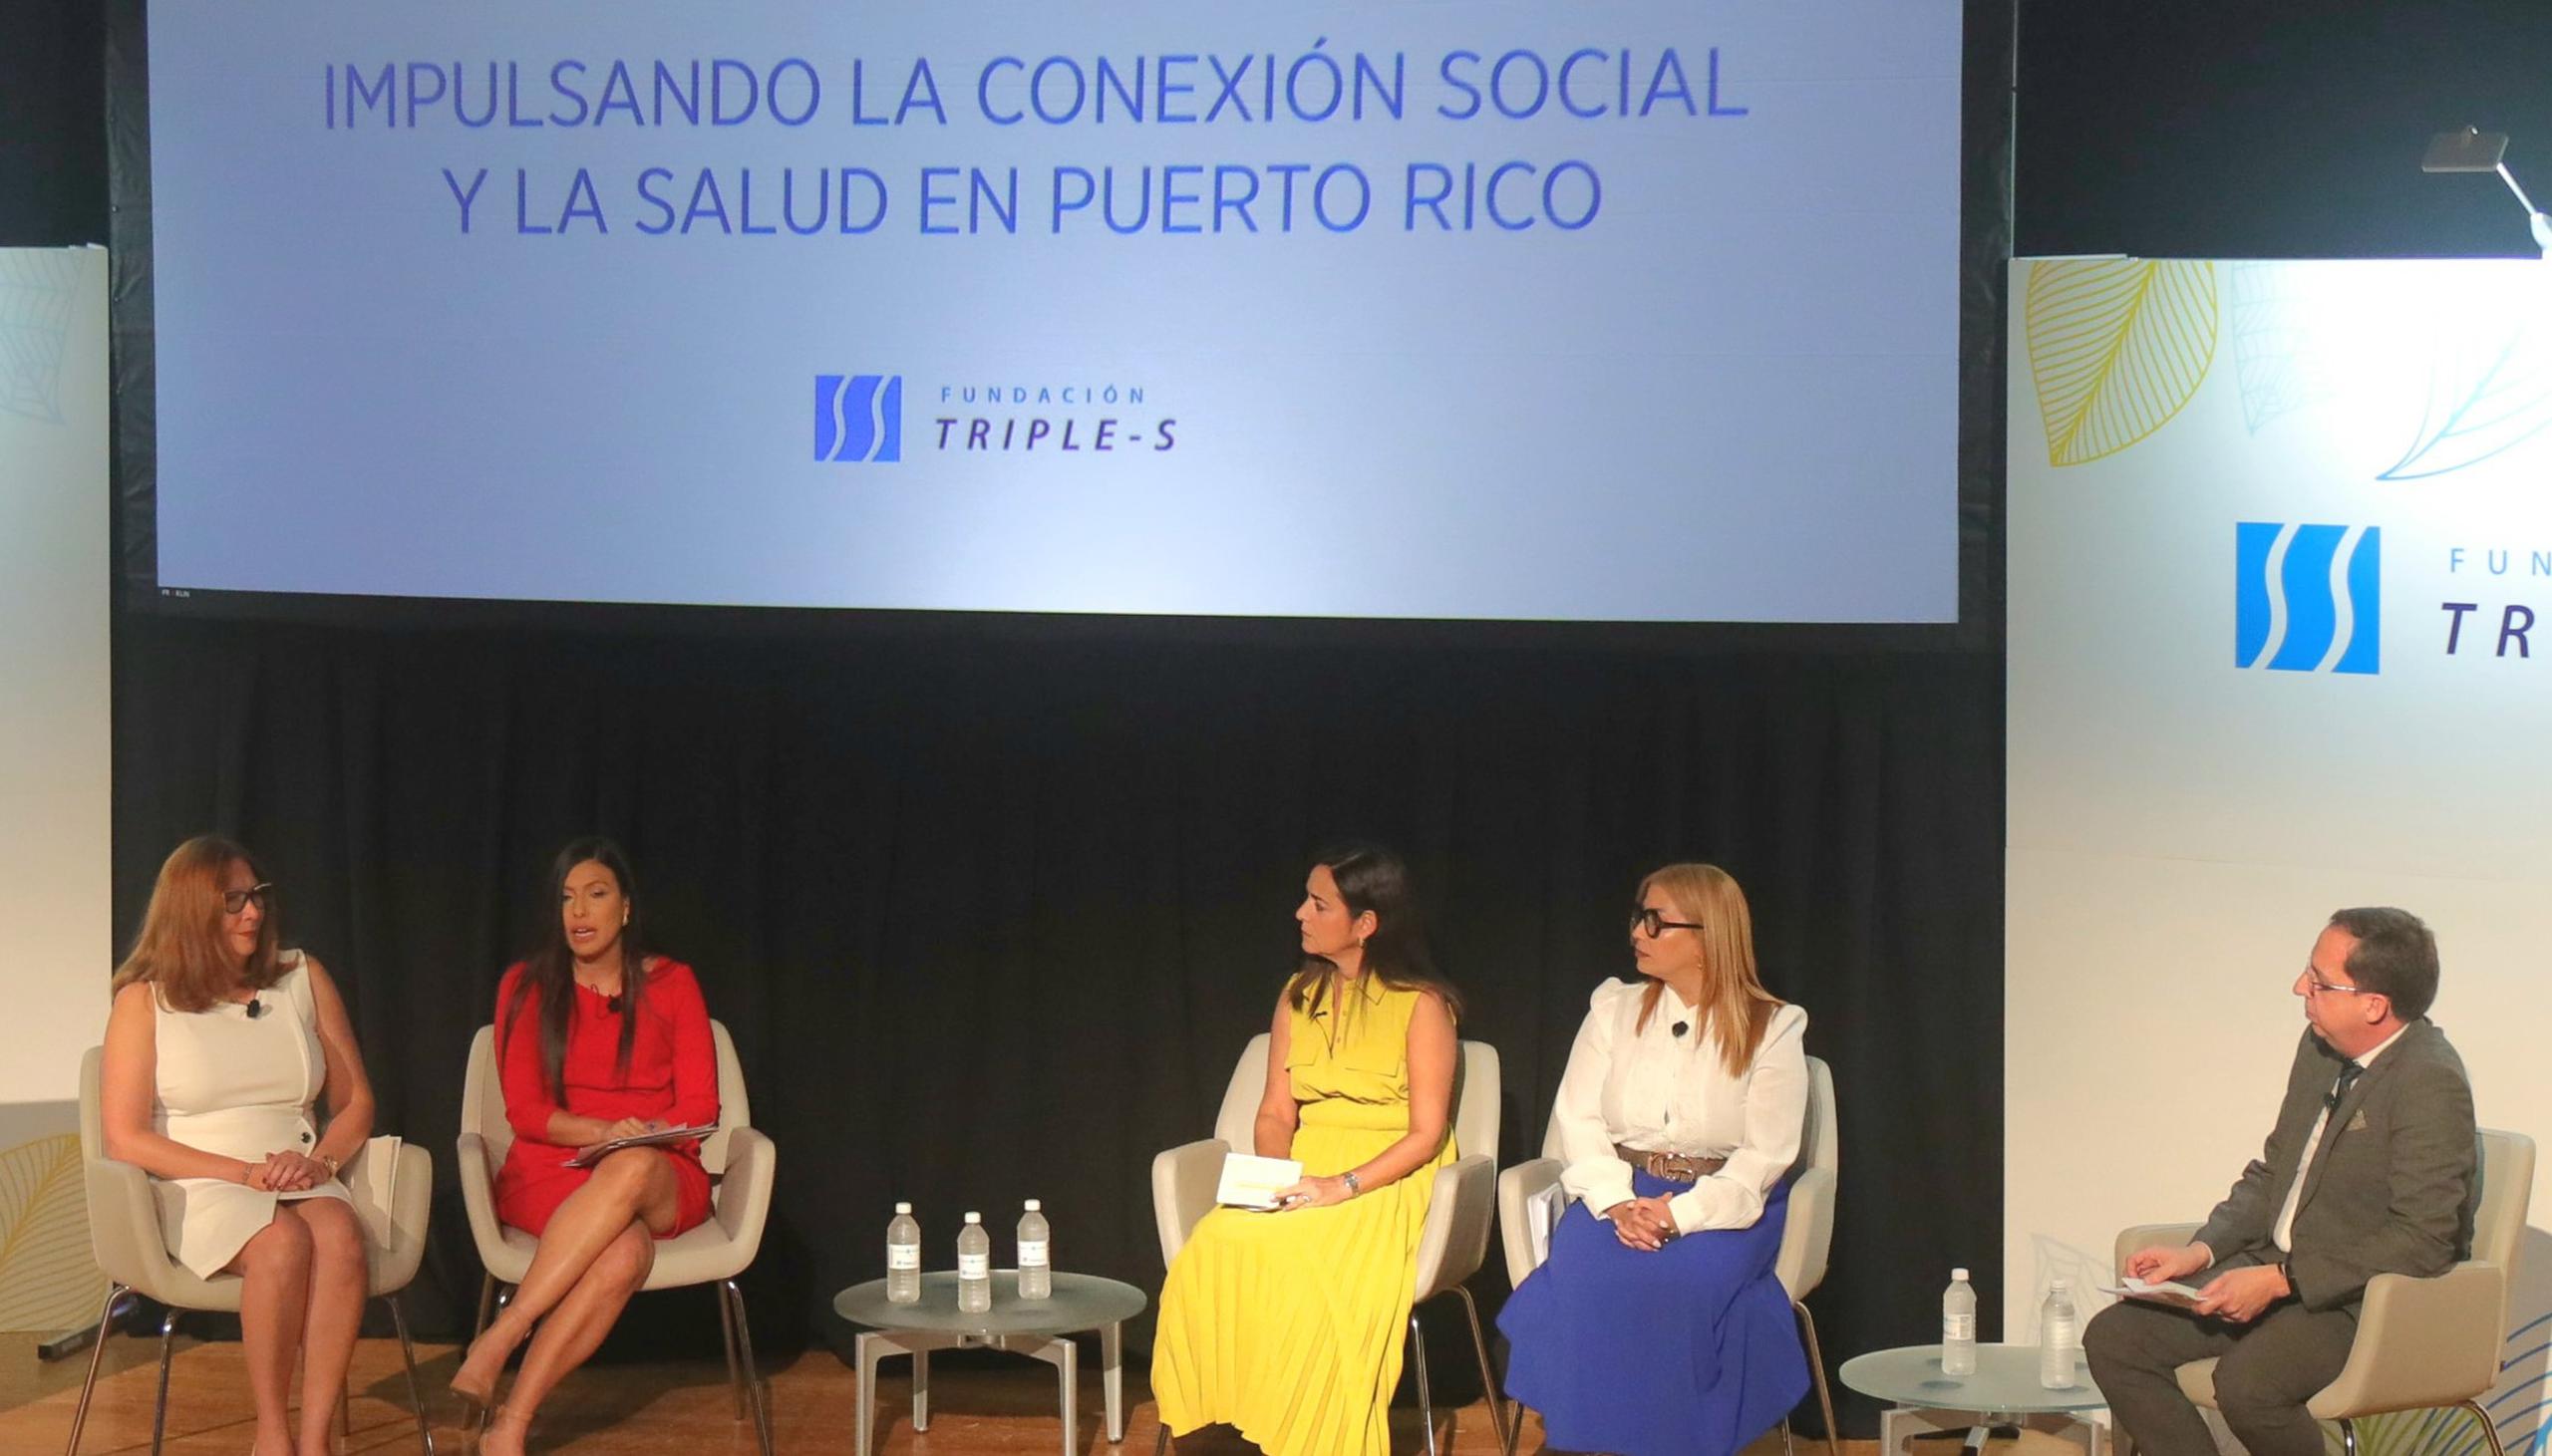 El cirujano general de EE. UU. y la Fundación Triple-S muestran impacto perjudicial del aislamiento social y la soledad en comunidades en Puerto Rico